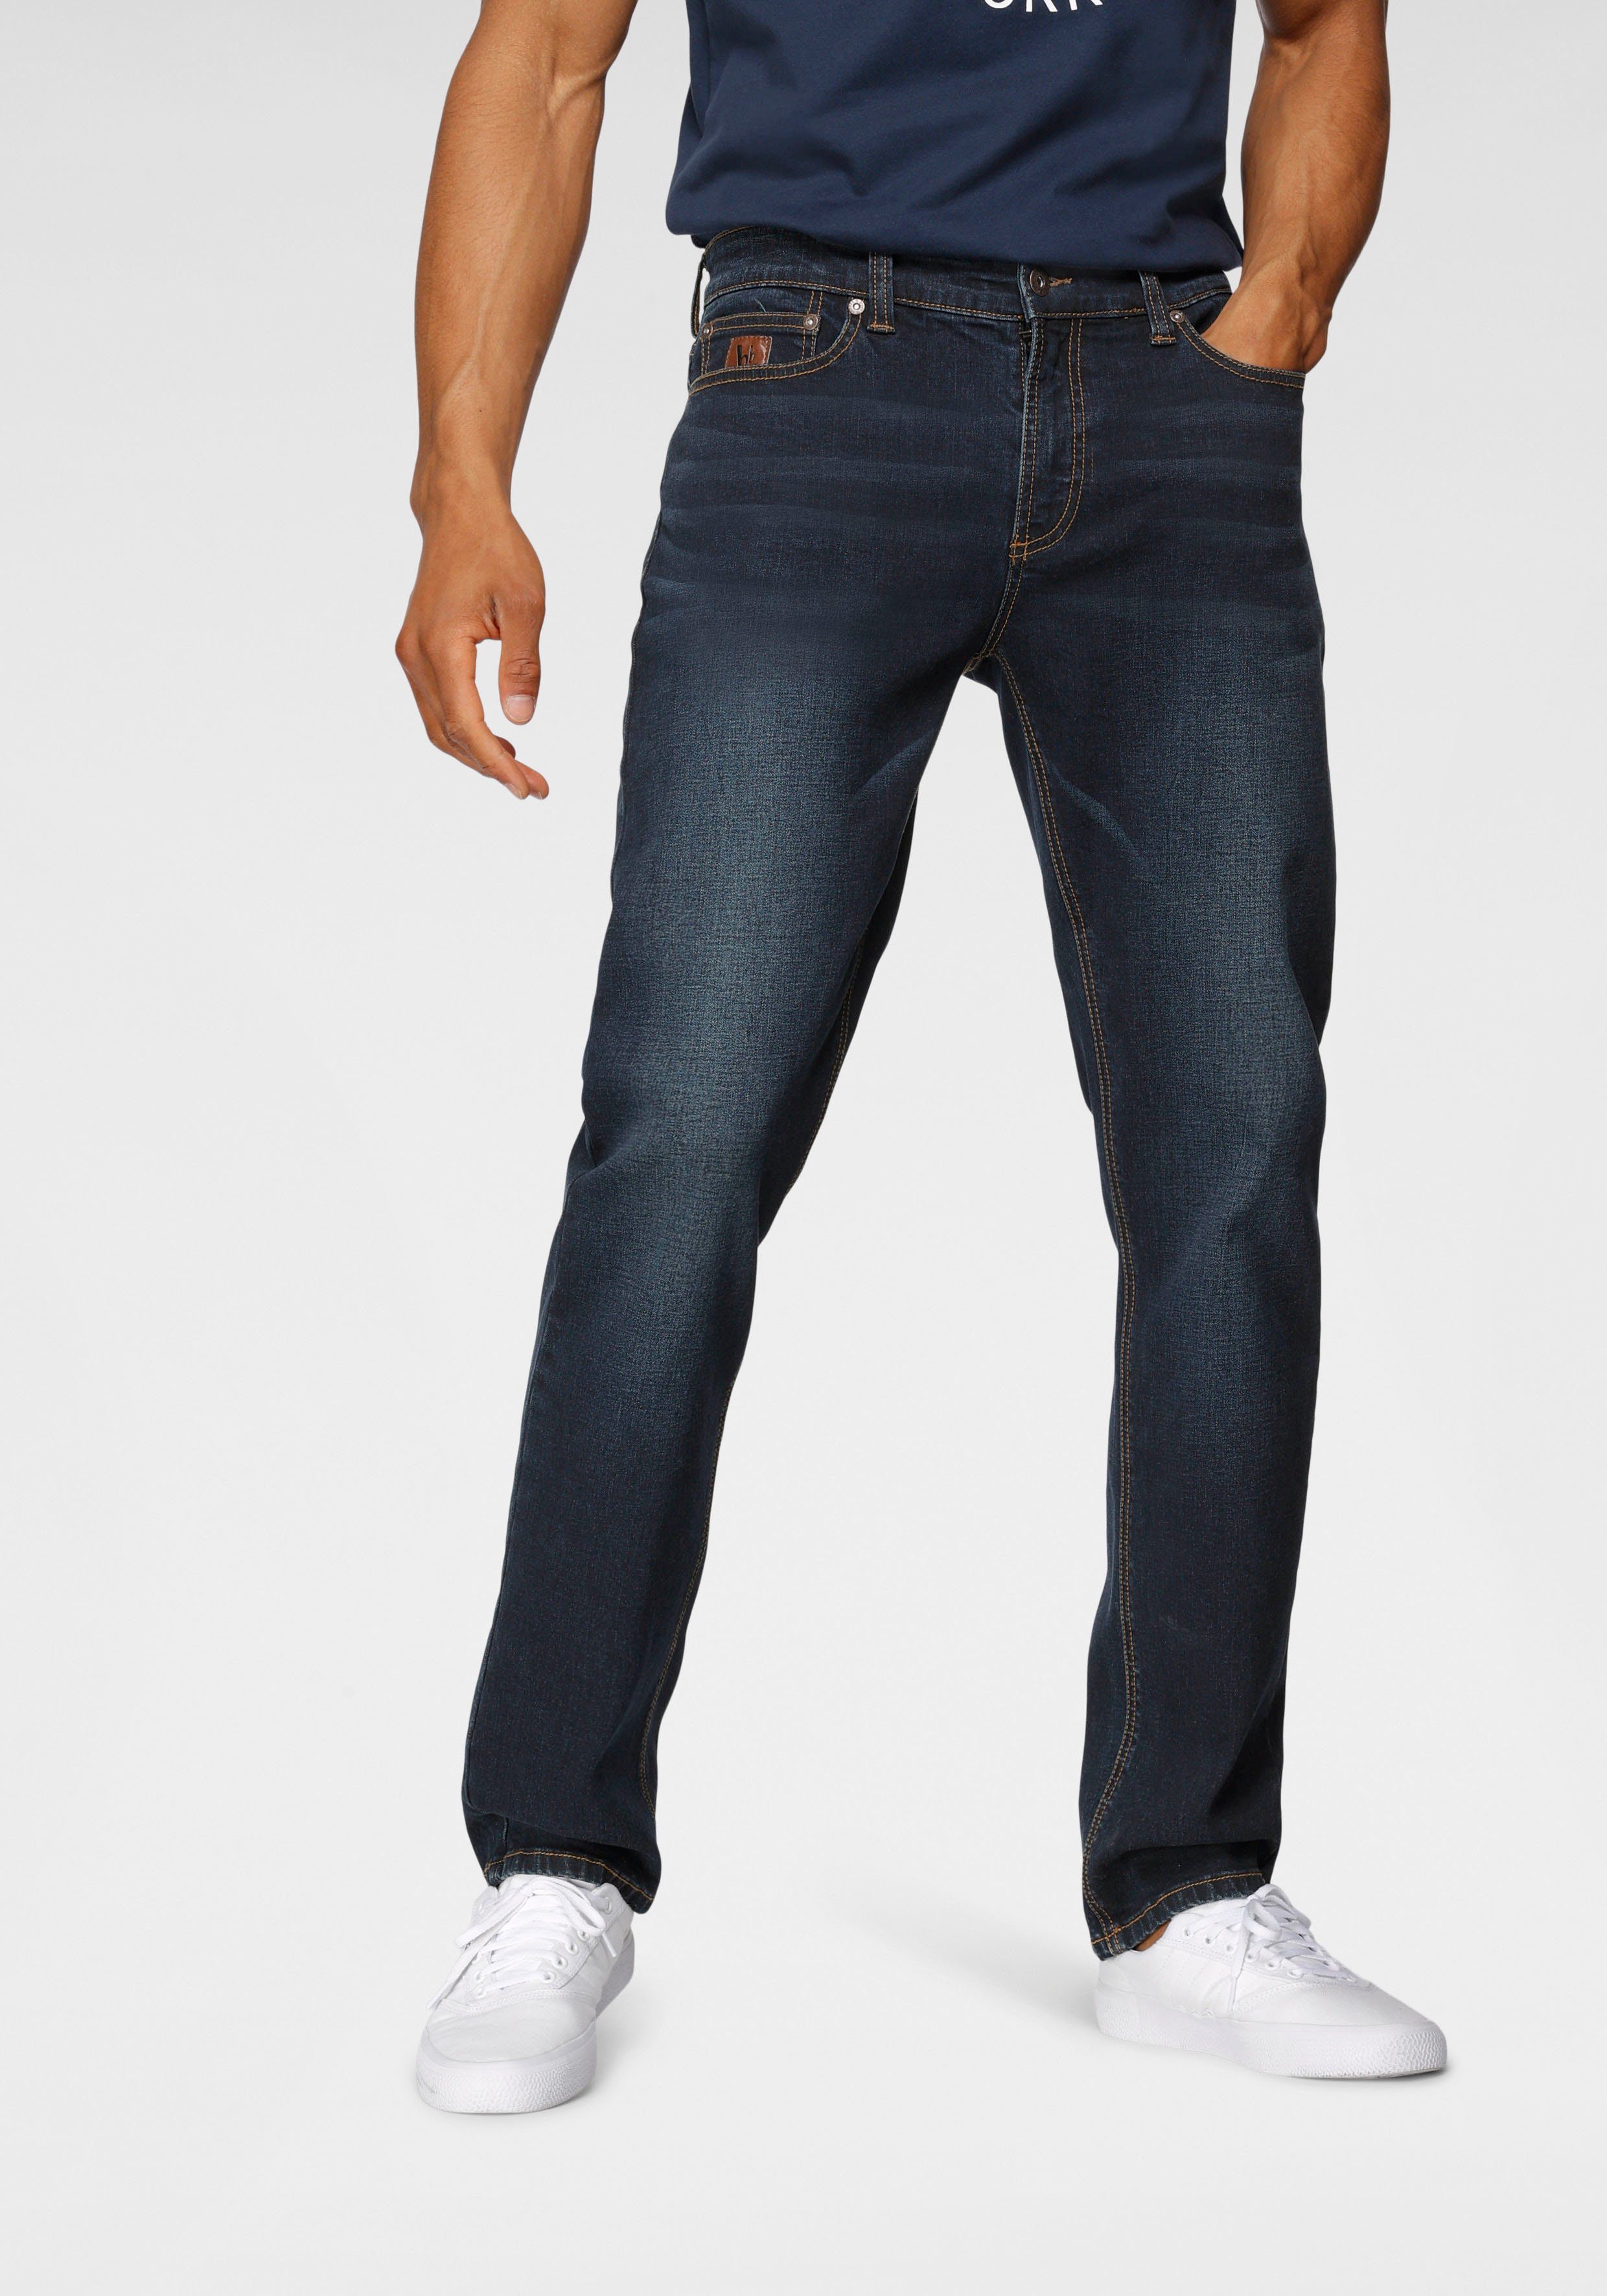 Bruno Banani Straight-Jeans »Hutch« online kaufen | OTTO